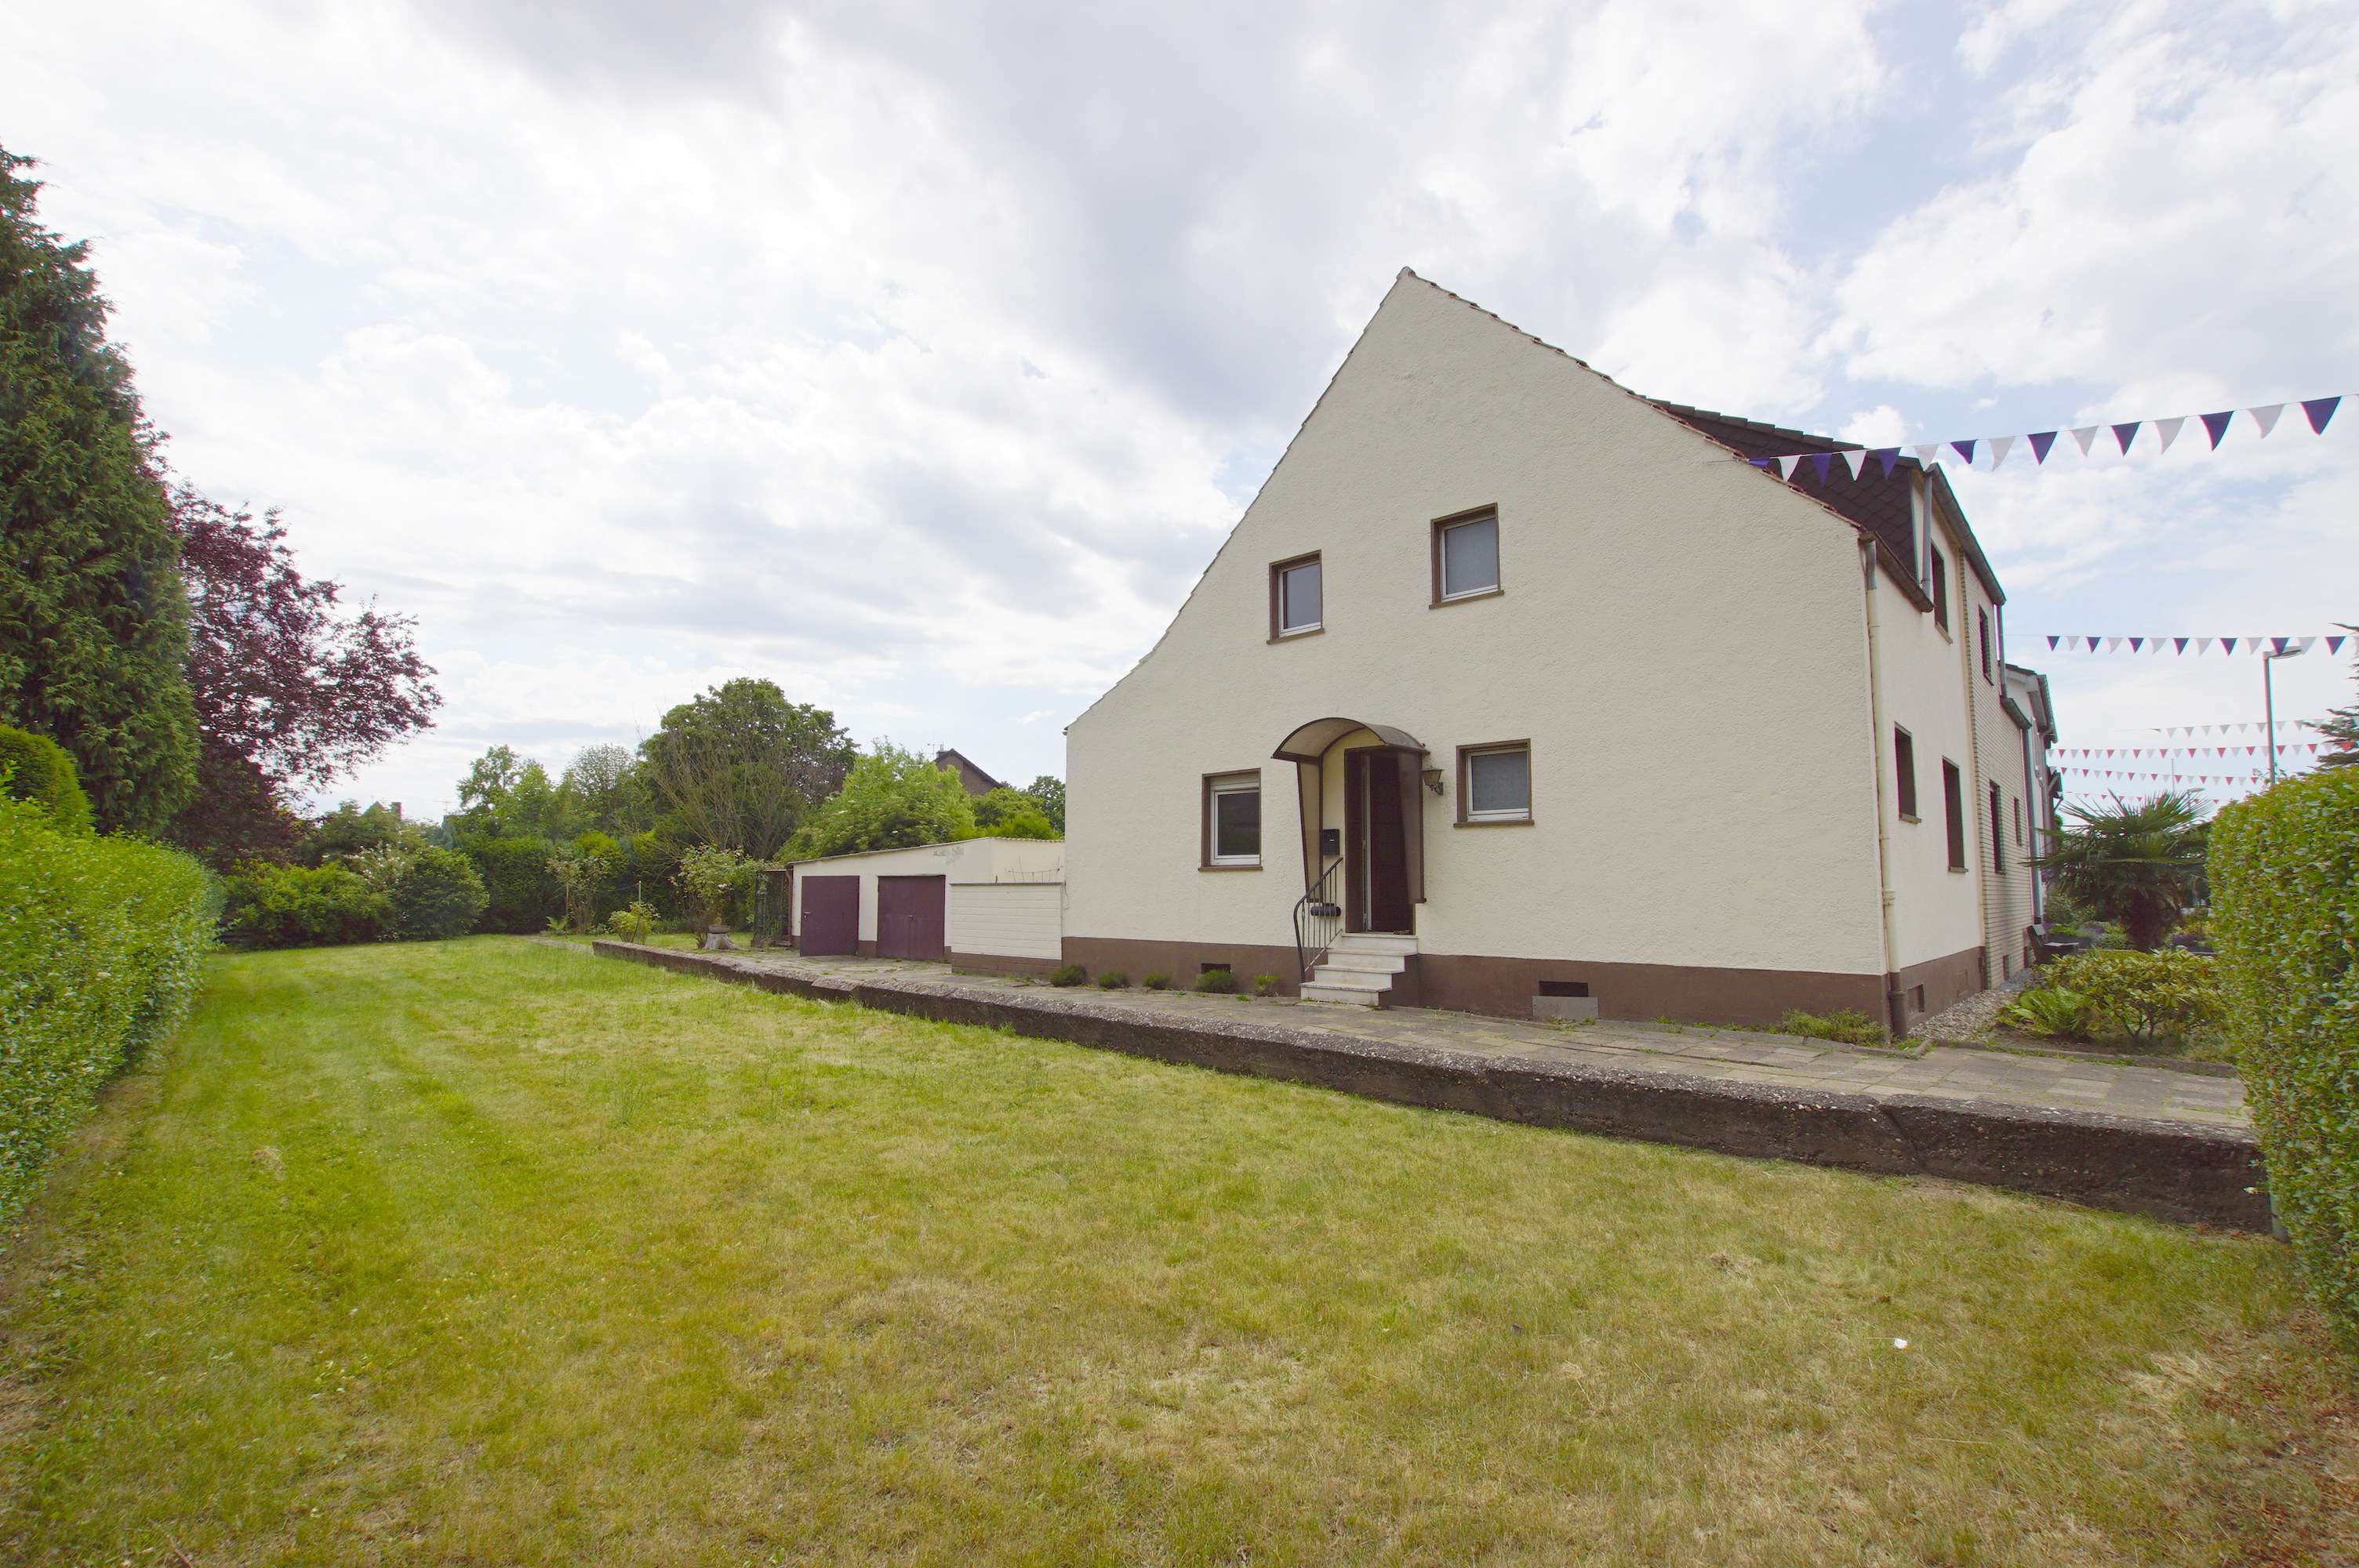 Verkauft! Doppelhaushälfte mit riesigem Ausbaupotenzial in Neuss-Grefrath